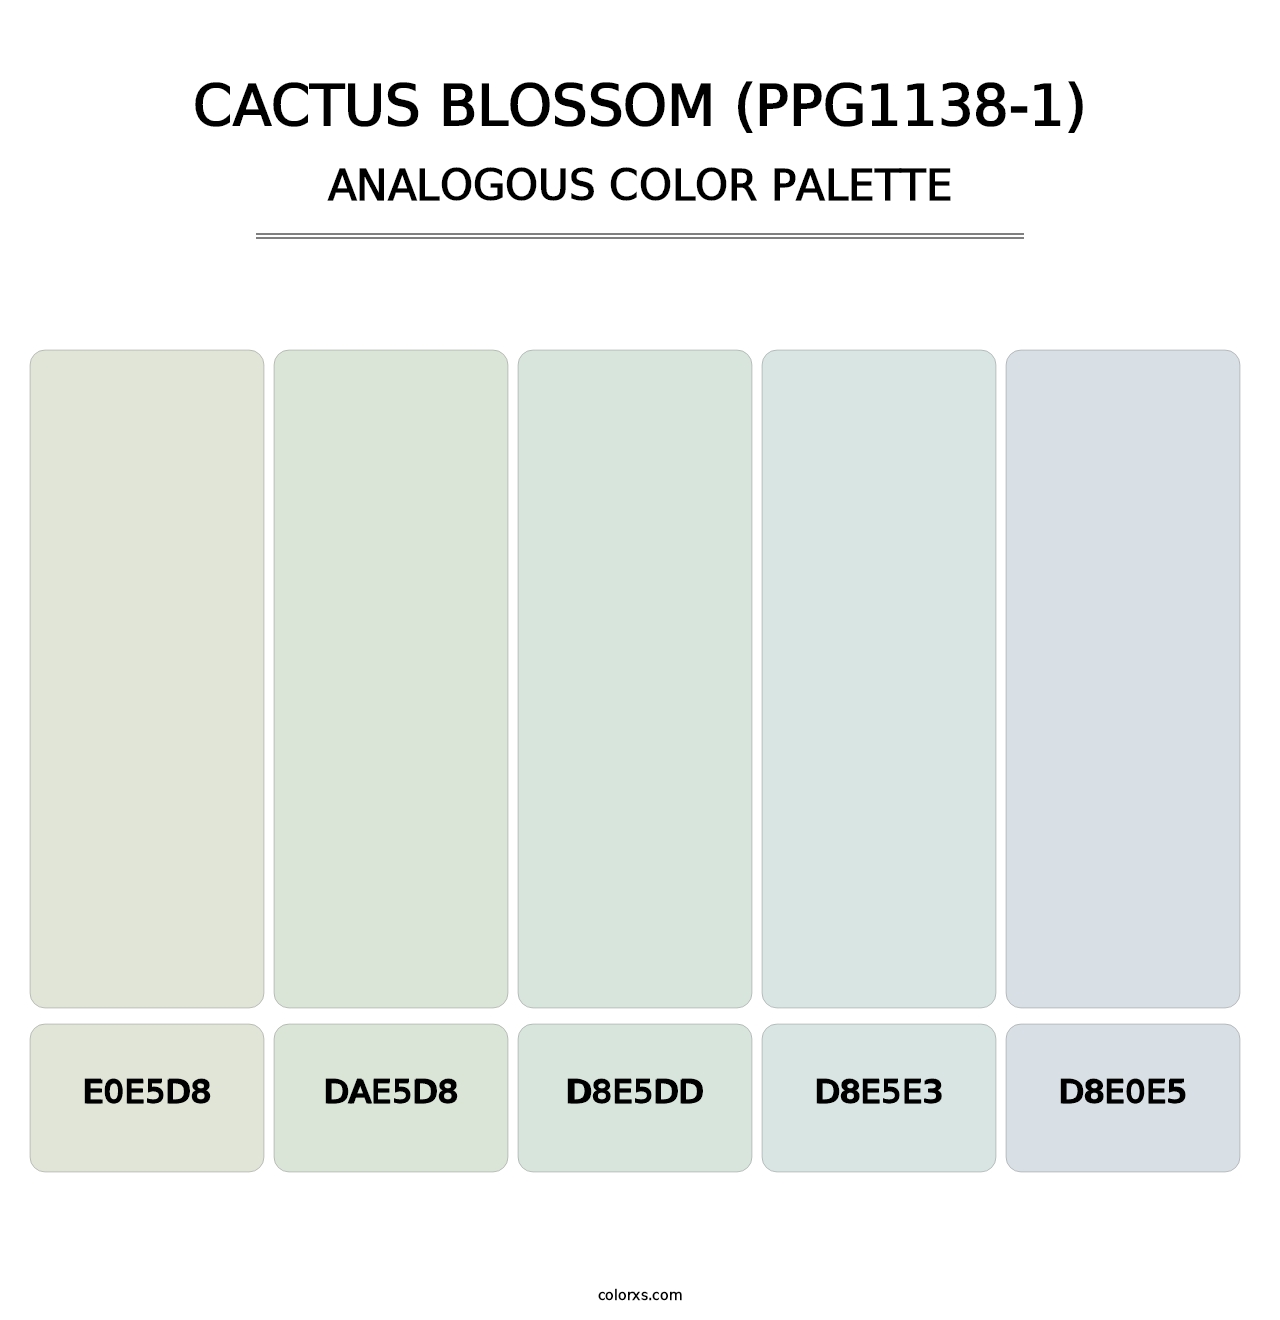 Cactus Blossom (PPG1138-1) - Analogous Color Palette